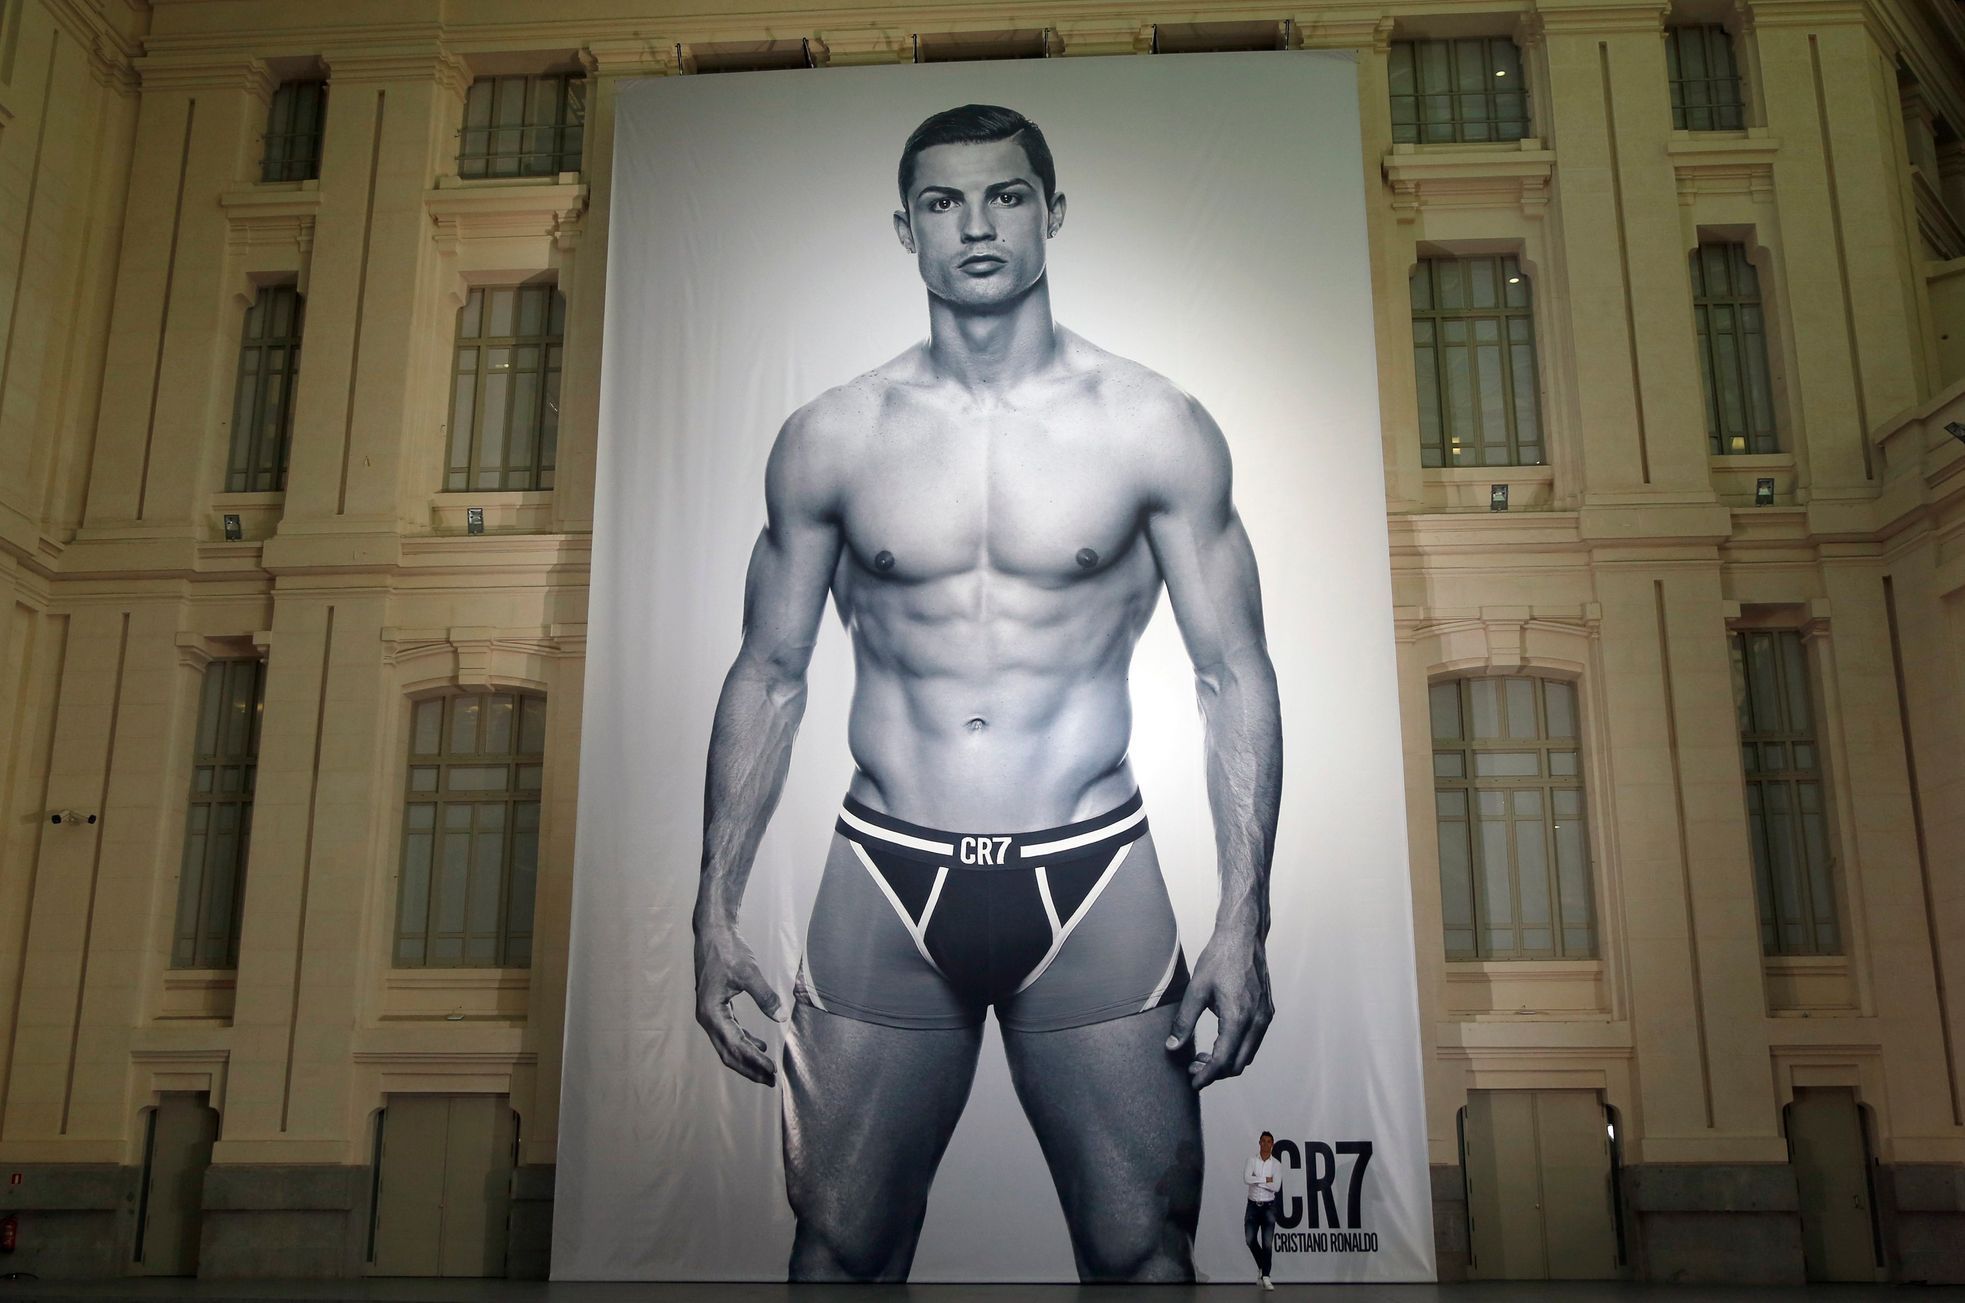 Ronaldo má vlastní značku spodního prádla CR7